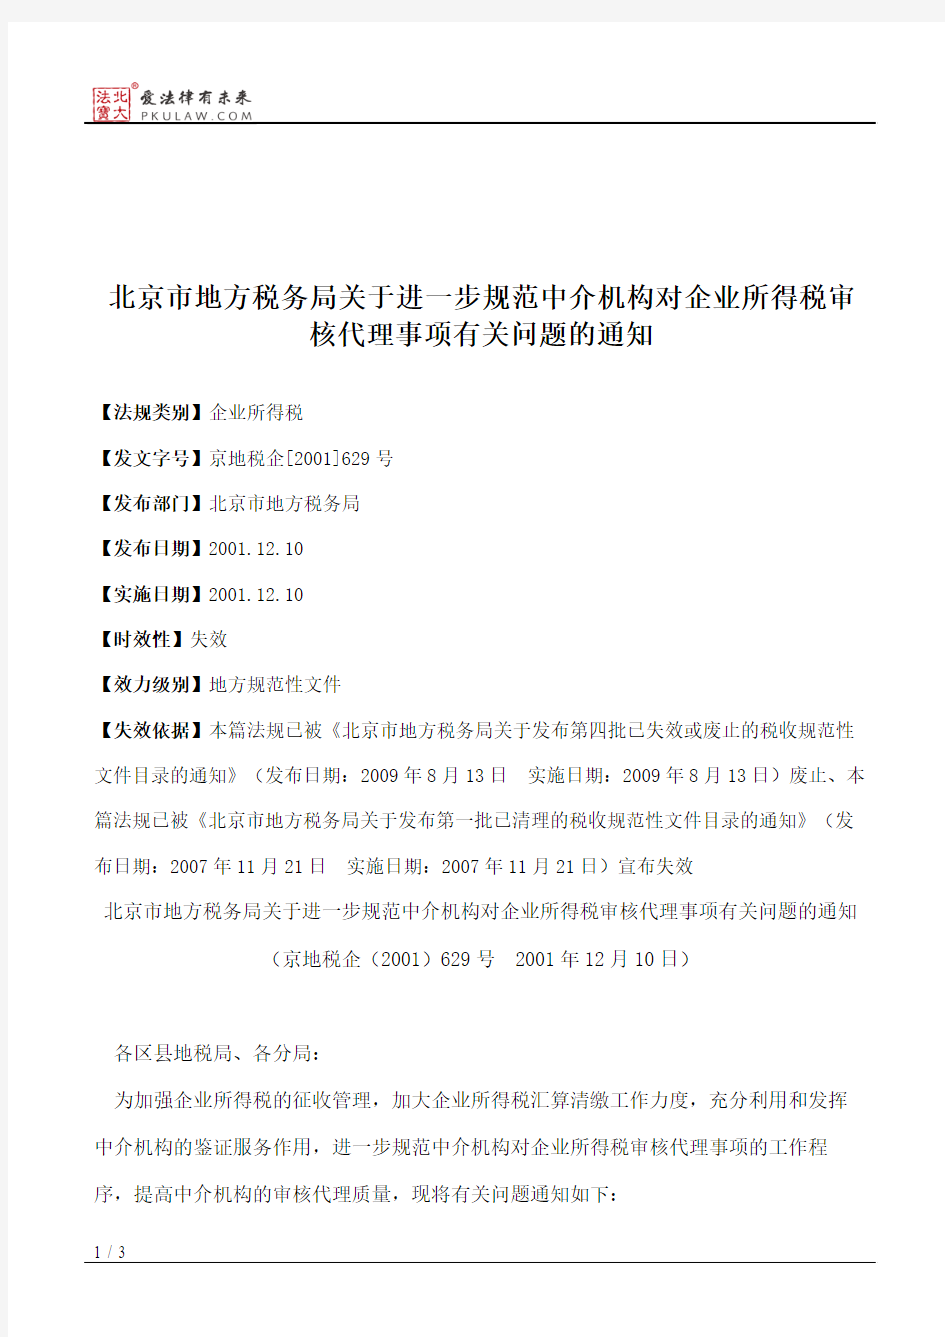 北京市地方税务局关于进一步规范中介机构对企业所得税审核代理事